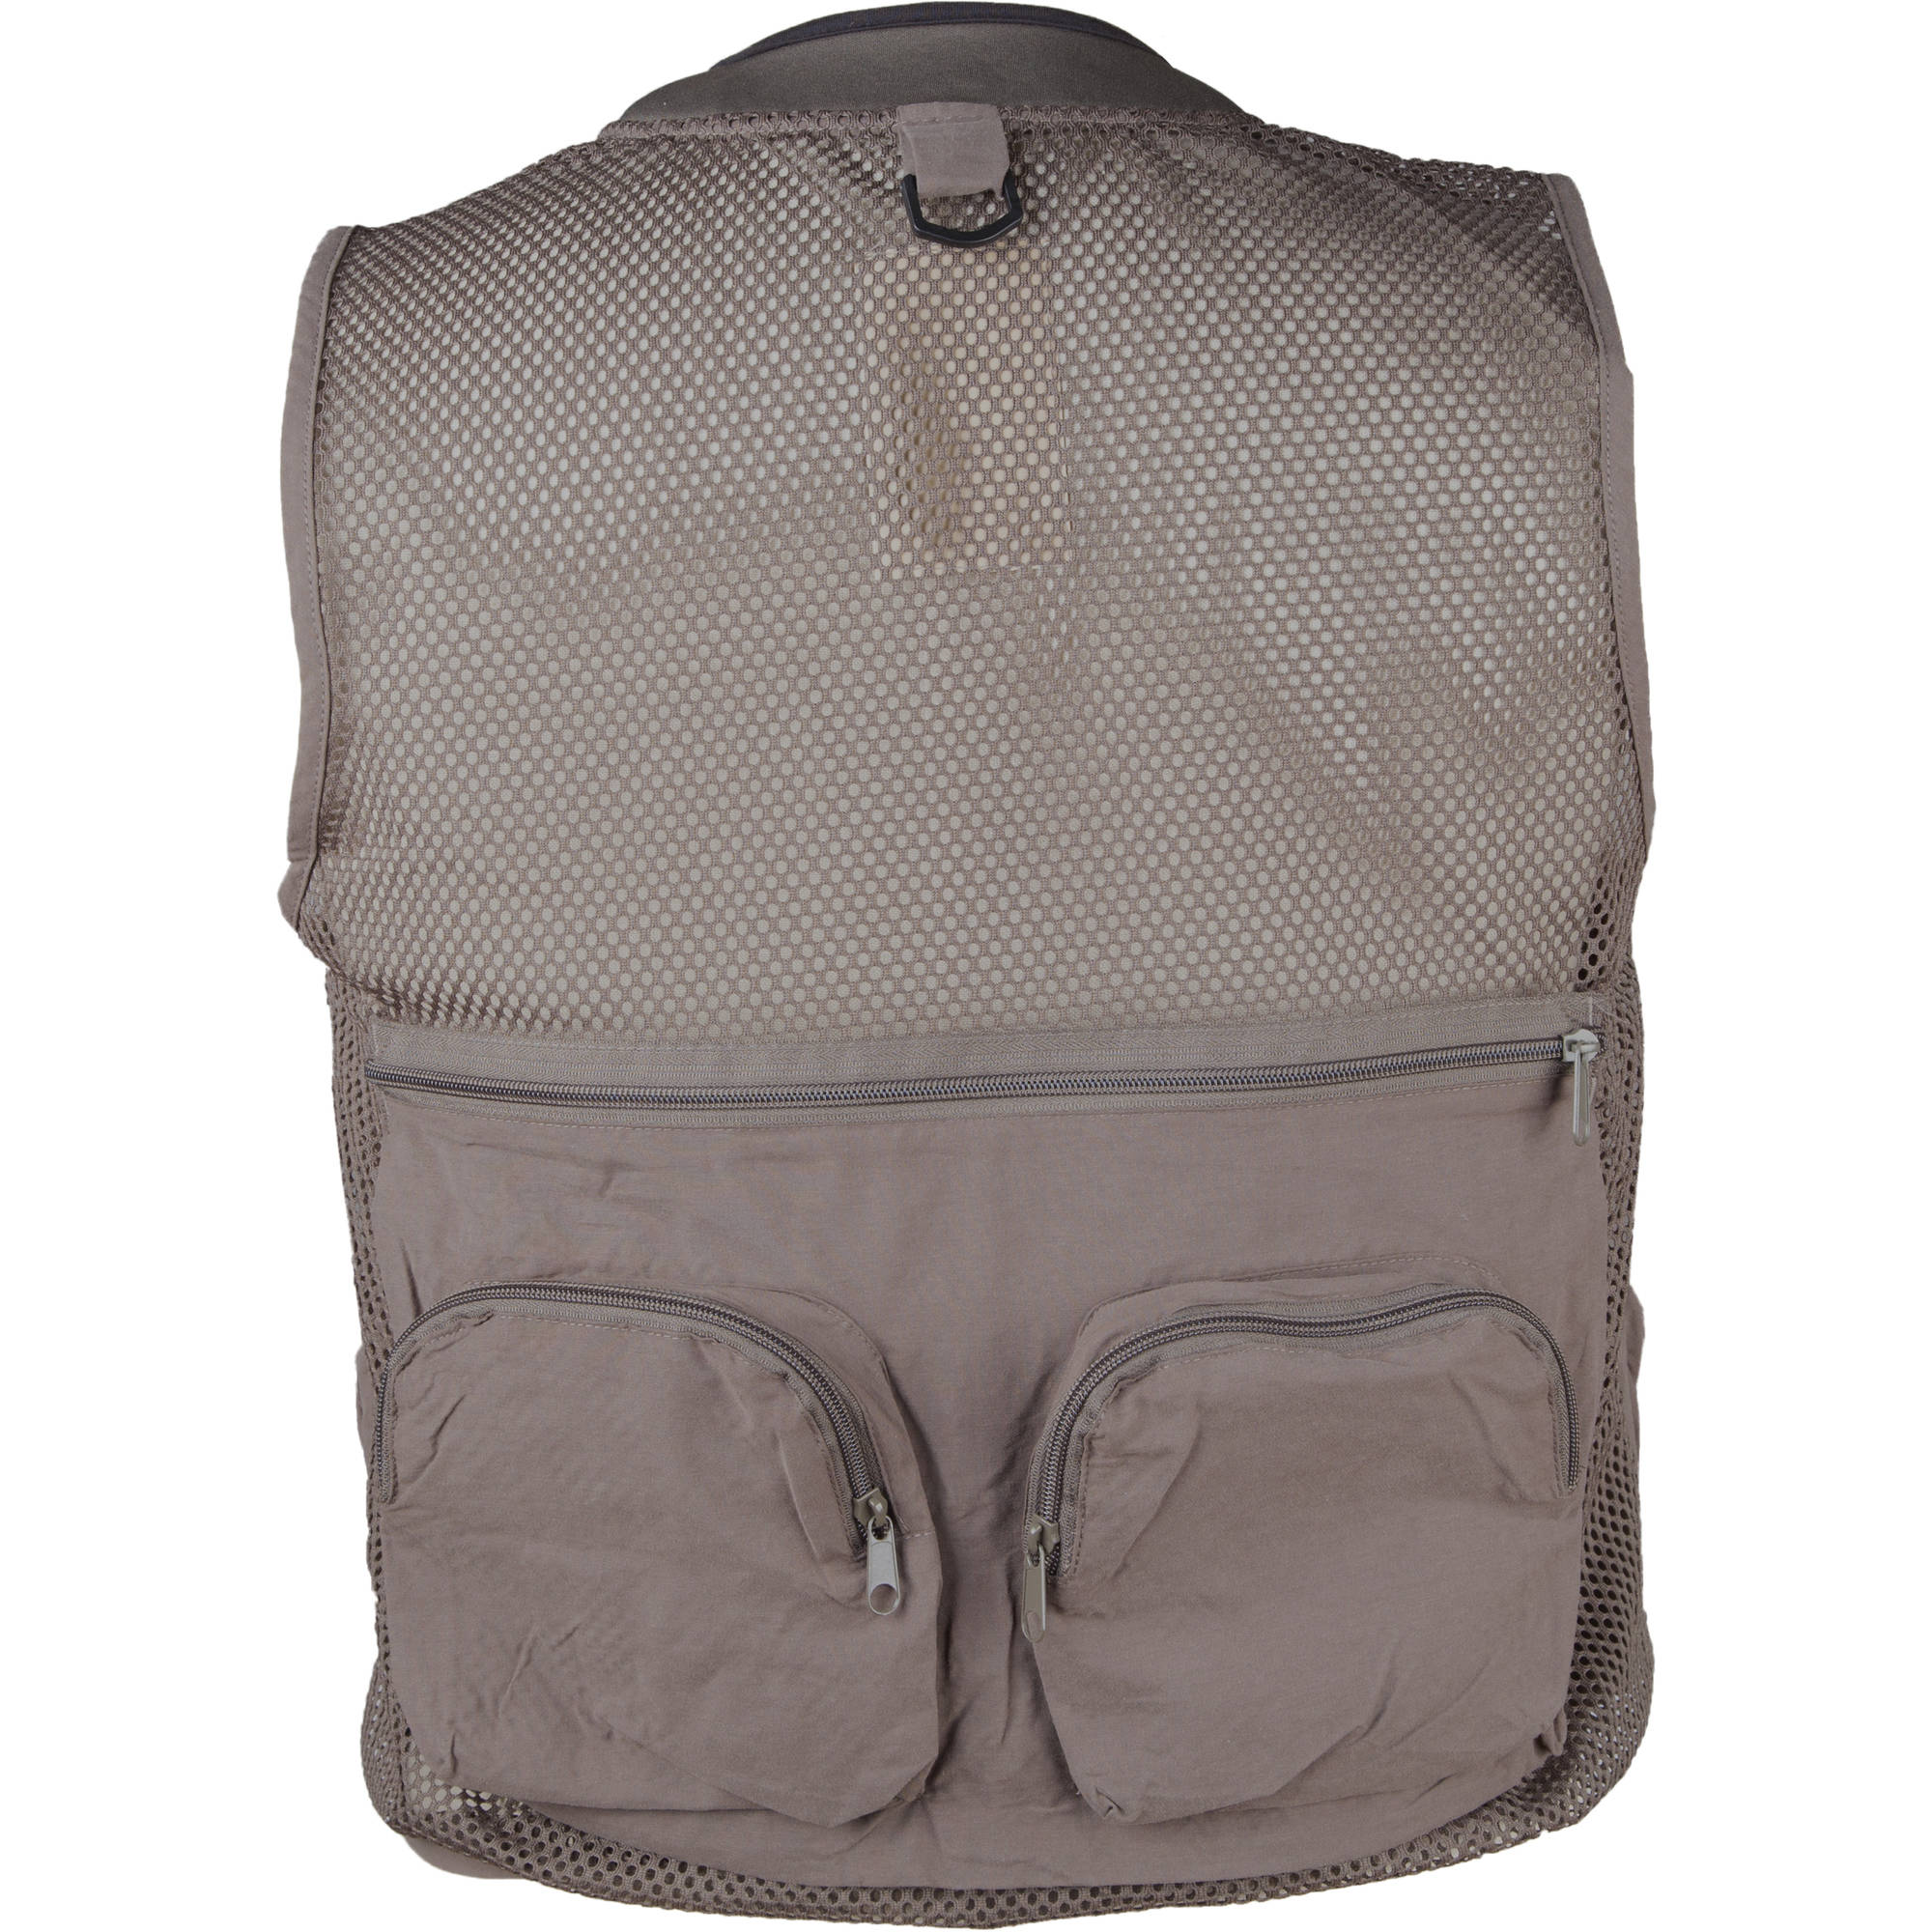 Master Sportsman 27 Pocket Mesh Back Vest XL Olive - image 2 of 2